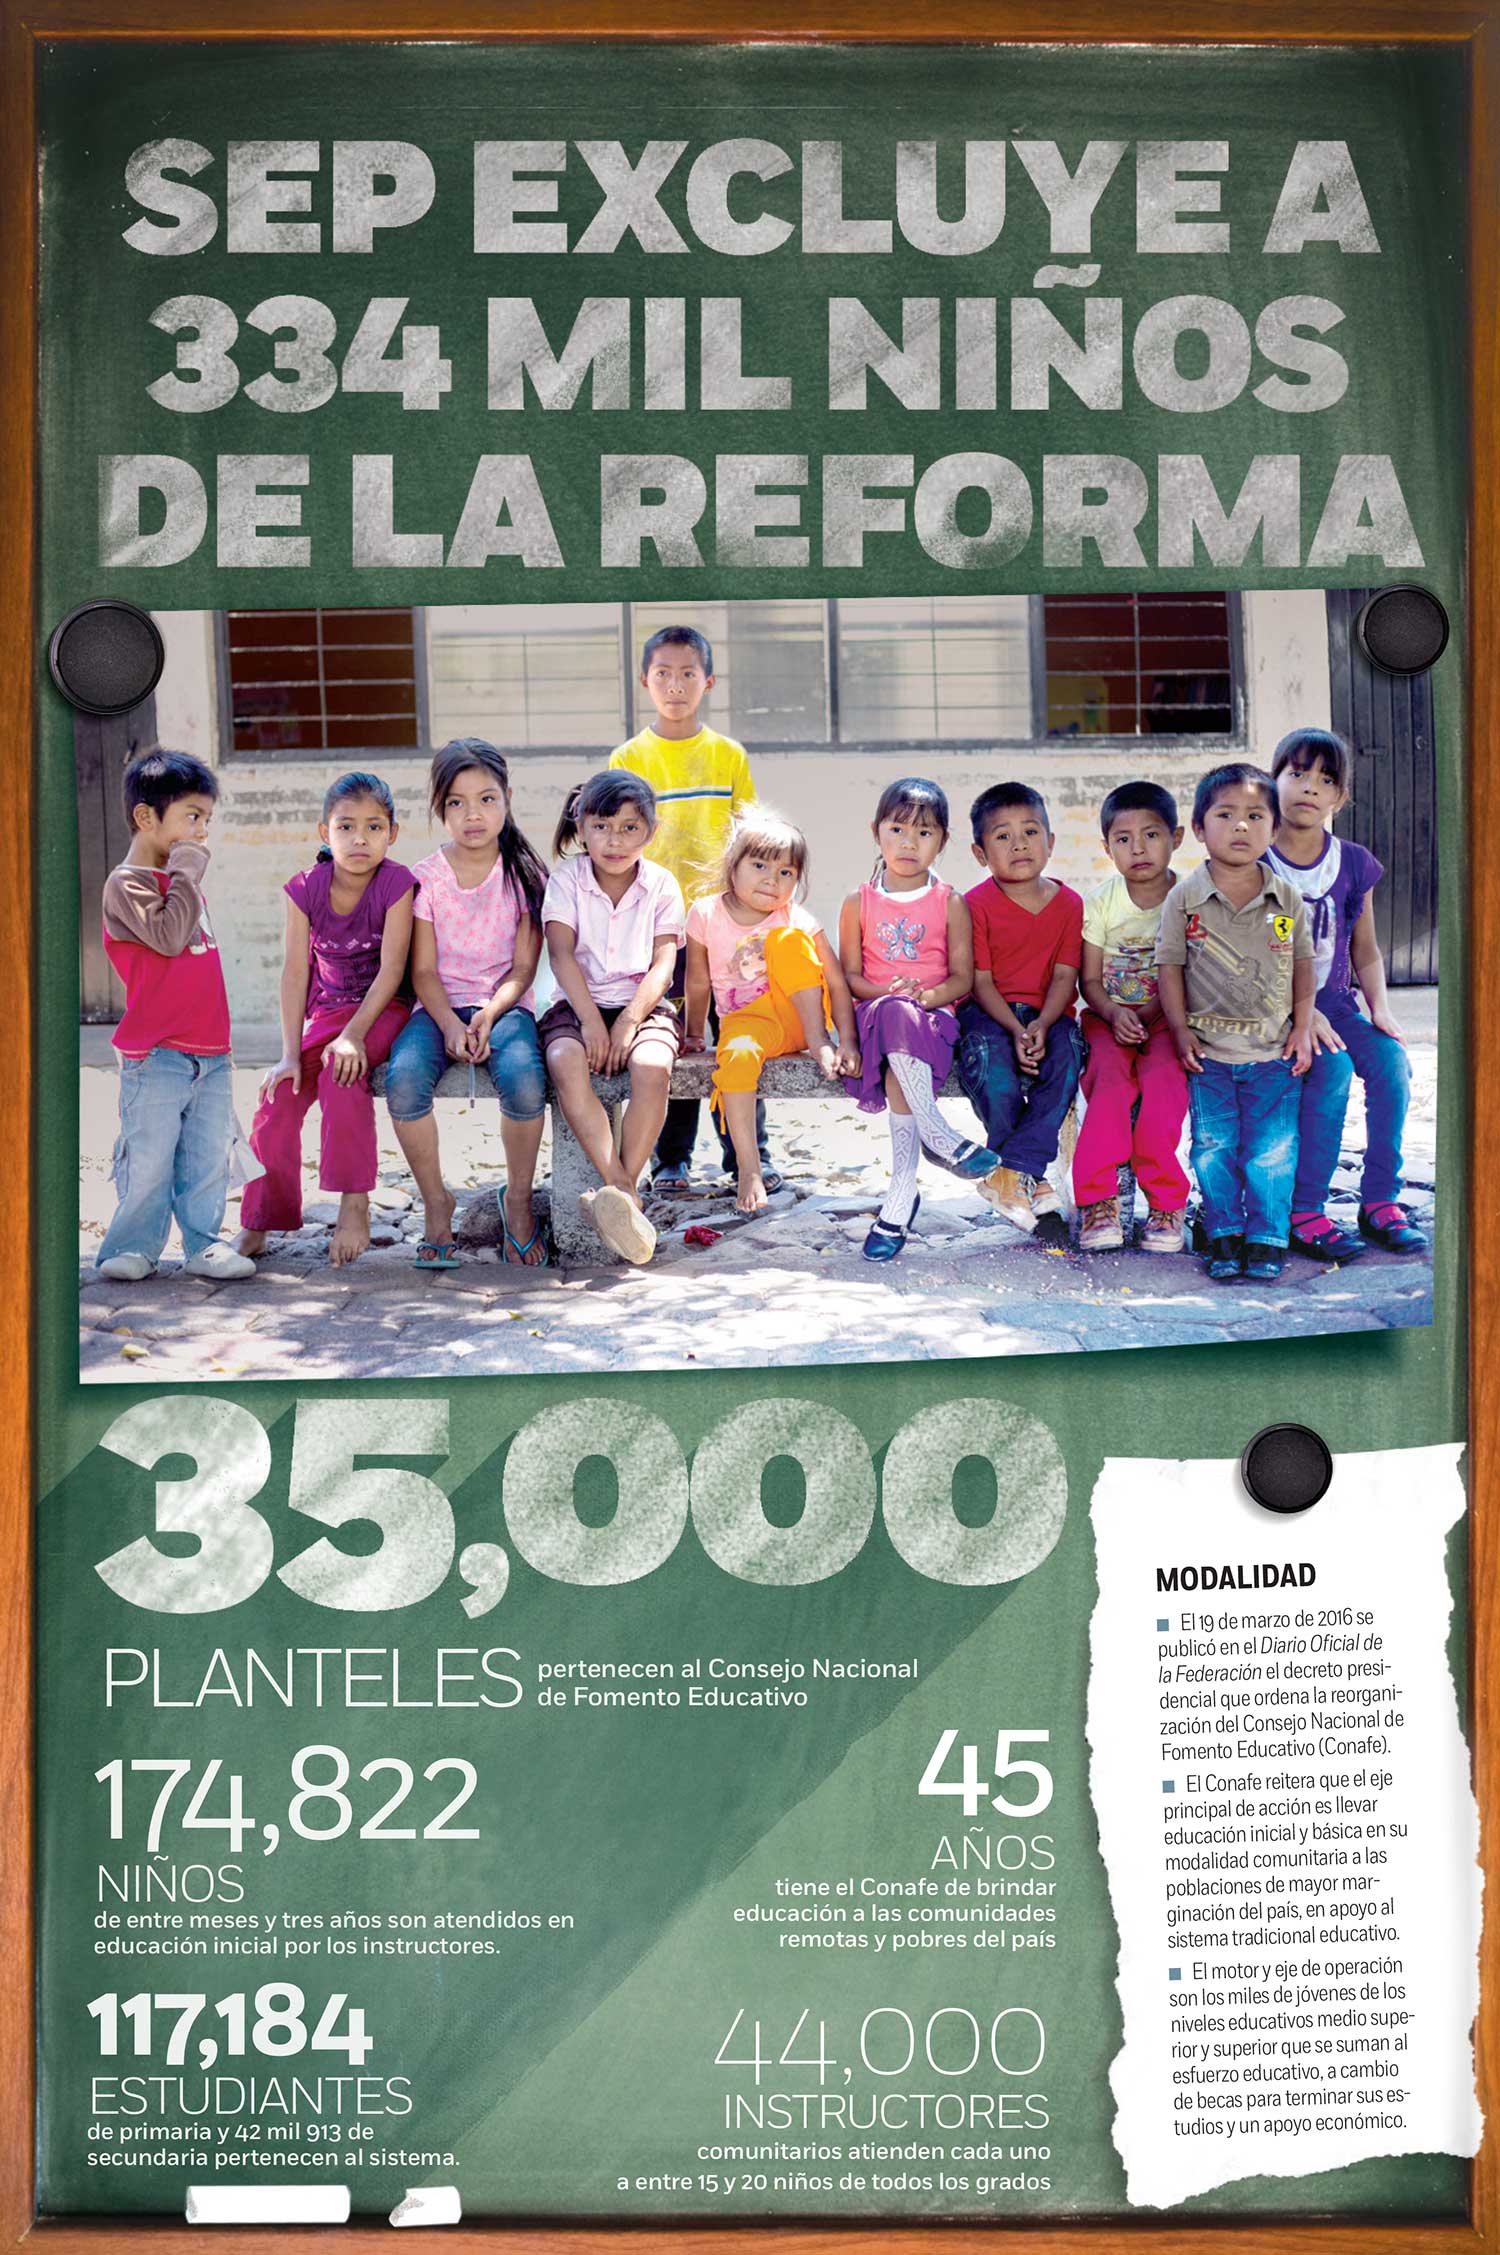  SEP excluye a 334 mil niños de la Reforma Educativa